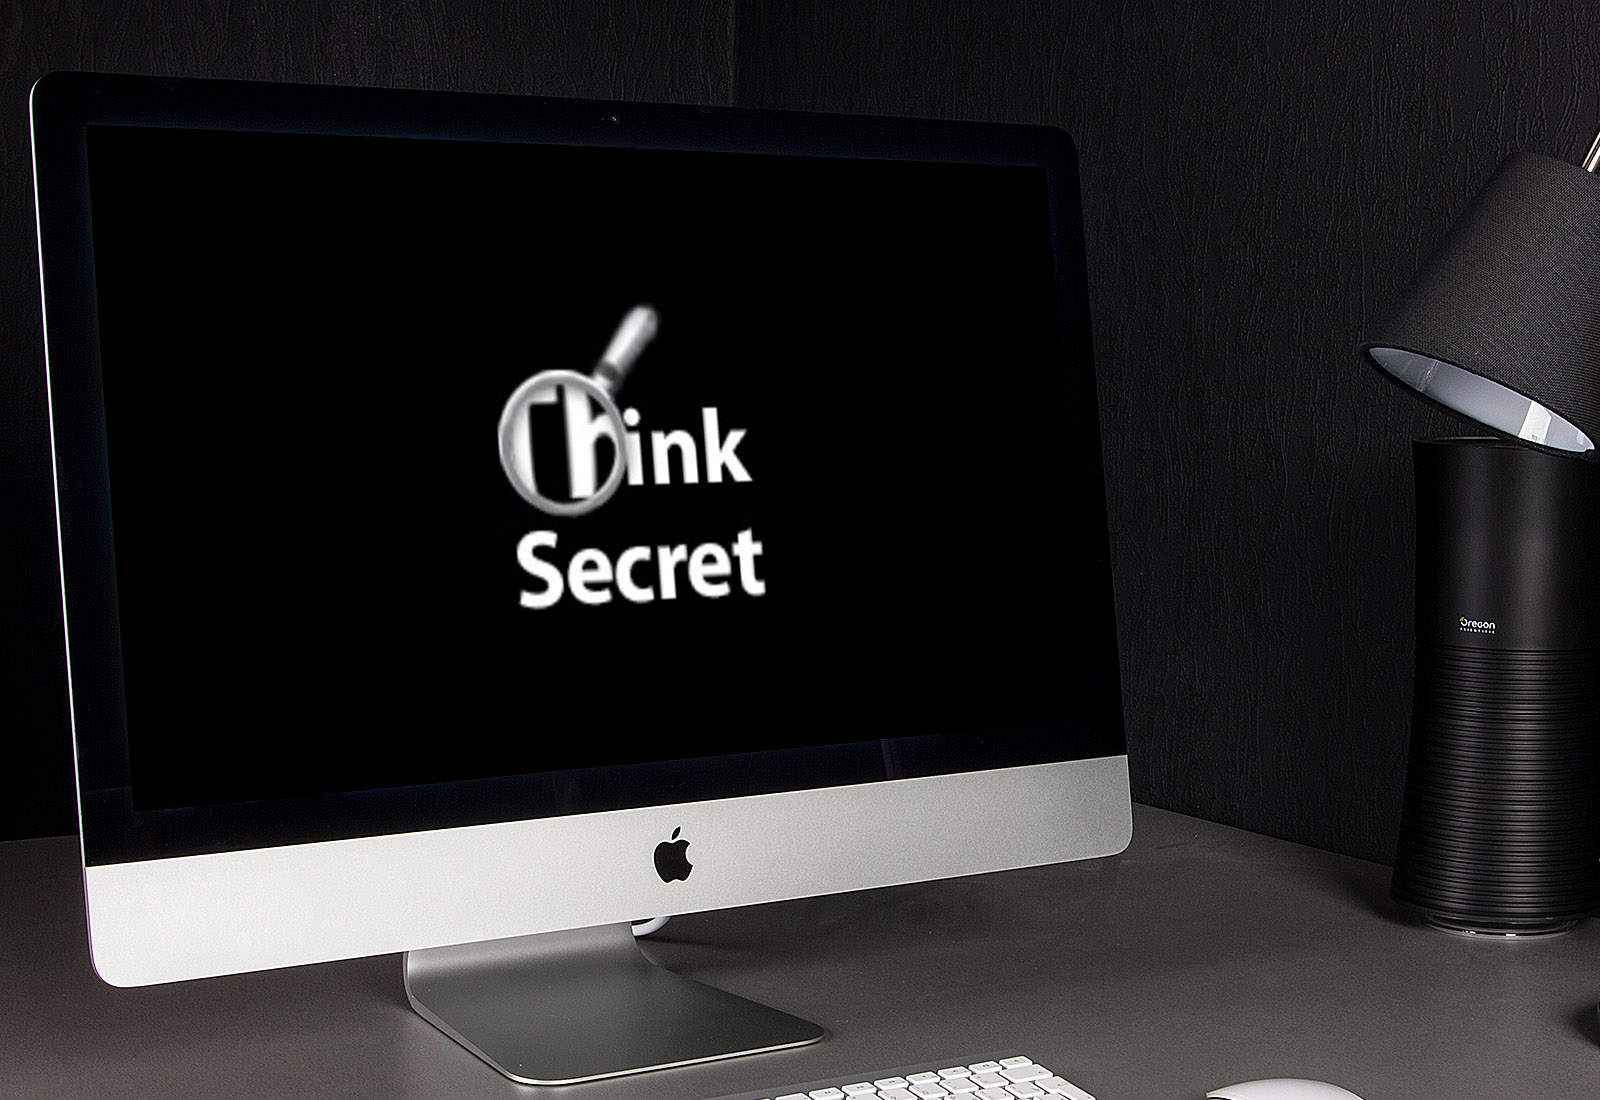 Этот день в истории Apple: Apple добилась закрытия сайта Think Secret